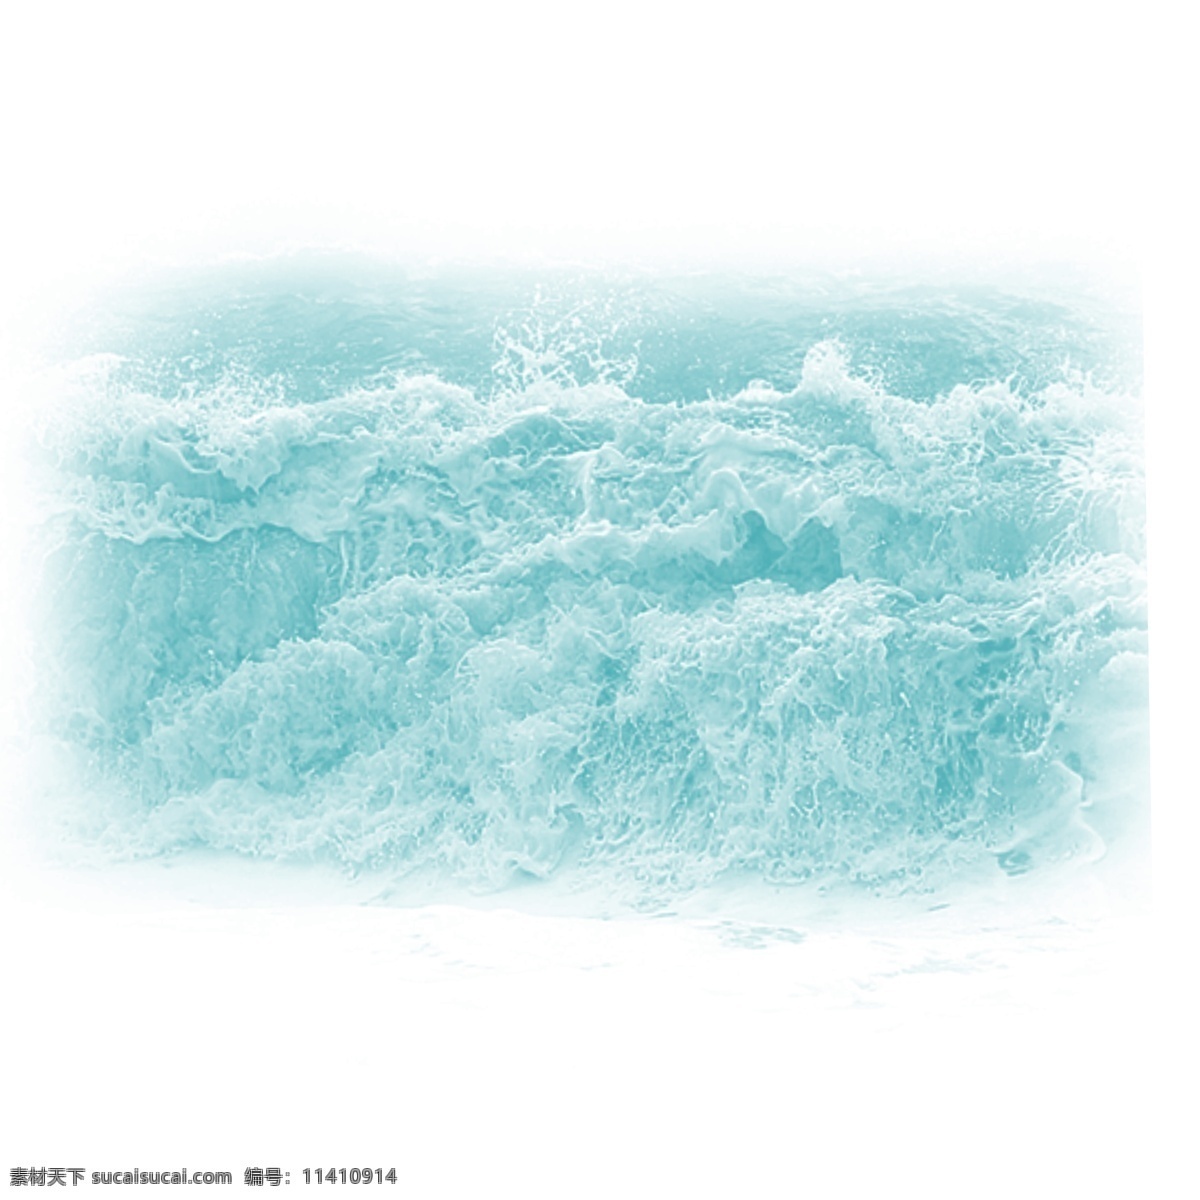 海浪 蓝色 海洋 大风大浪 大海 效果 水浪 波浪 波涛 浪花 矢量 装饰 浪